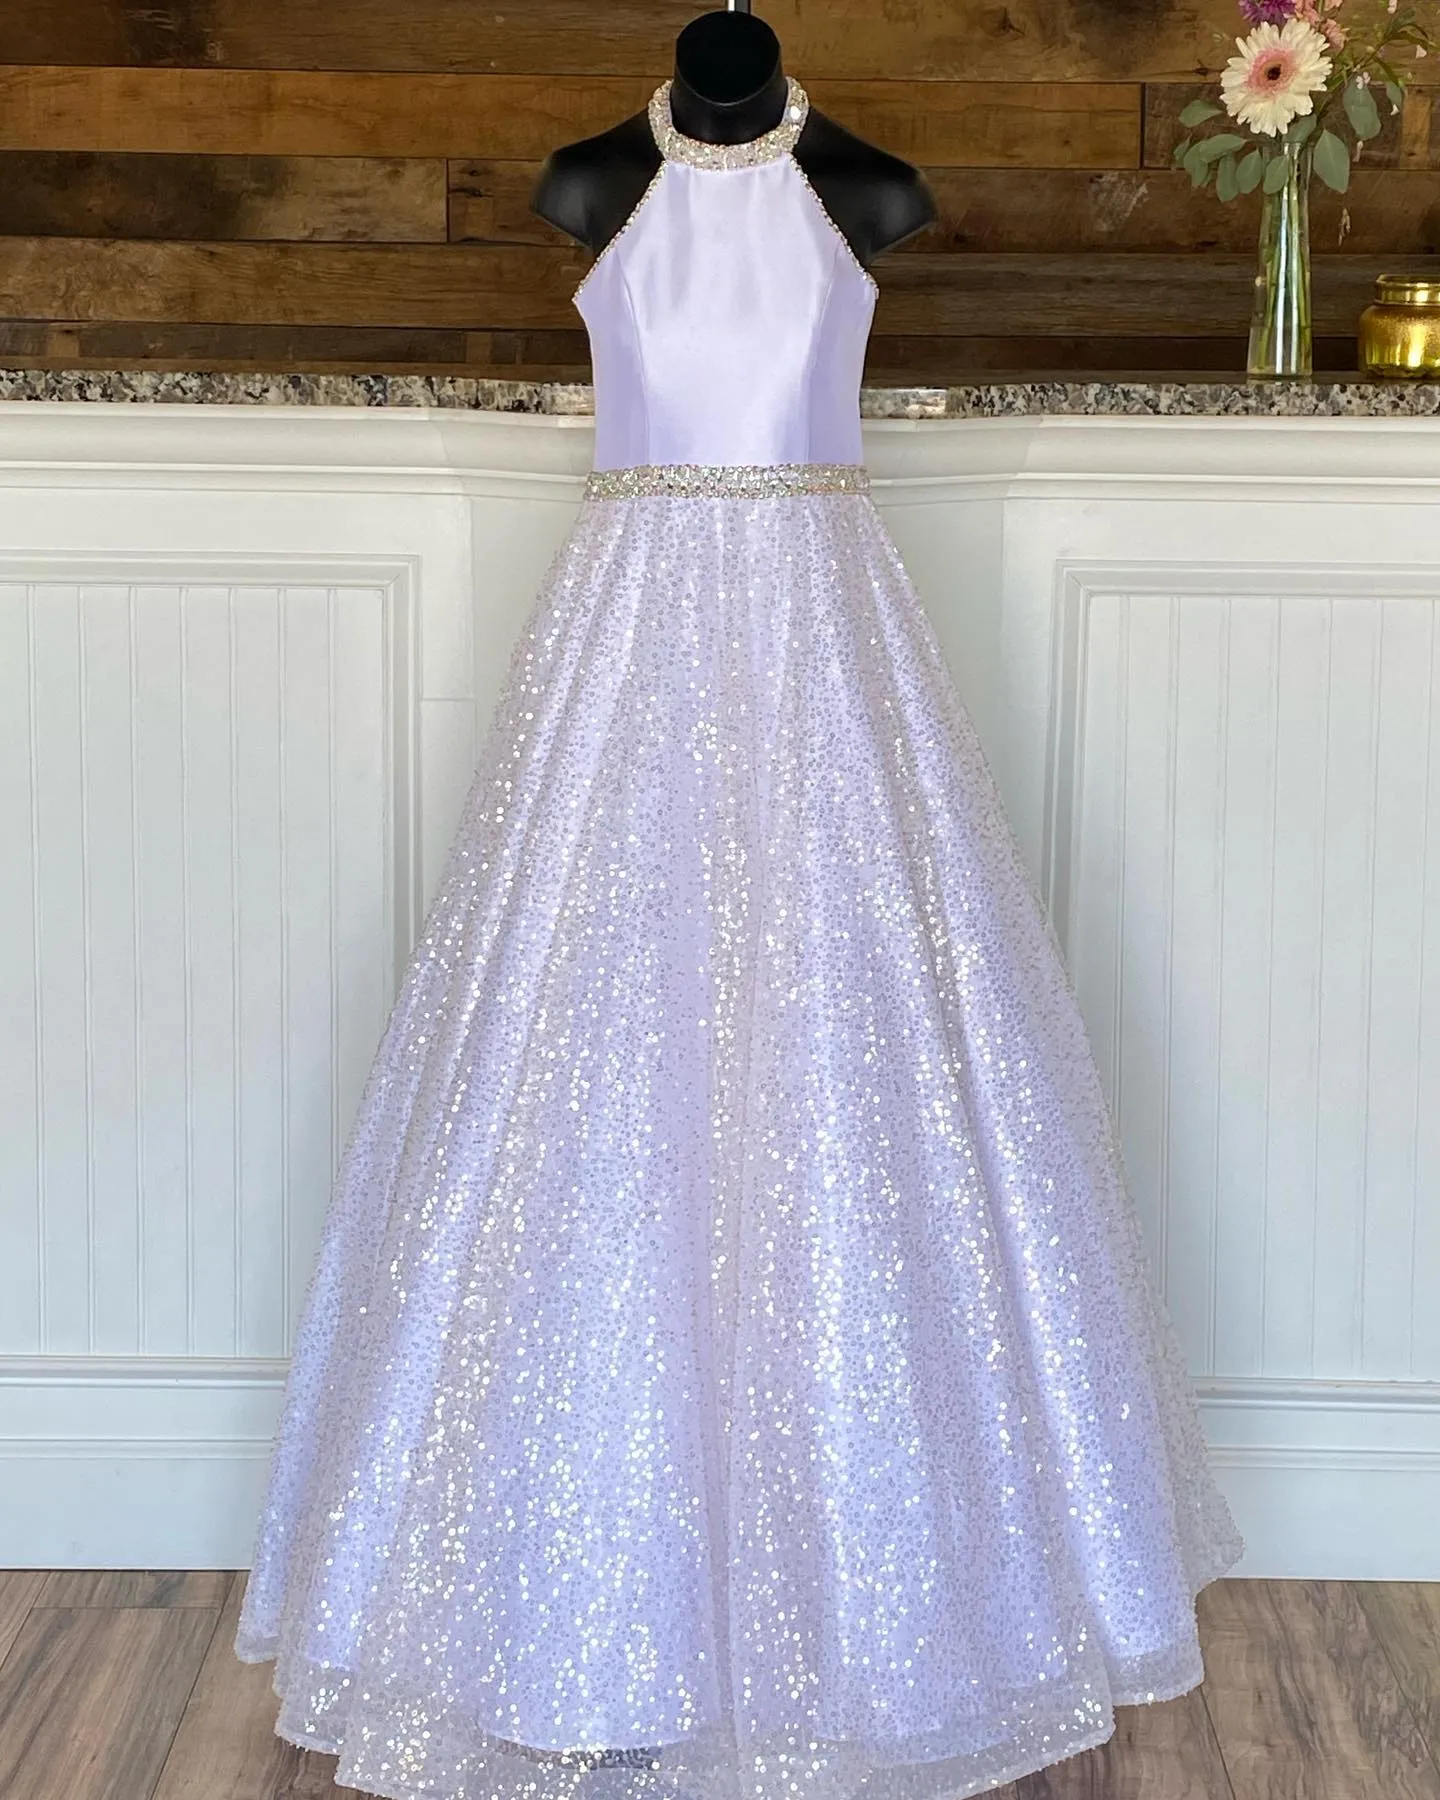 Платье Little Miss Pageant для подростков, юниоров, малышей, 2021 г., белое длинное детское платье с пайетками, официальное вечернее платье с бисером, вырезом на шее, розовым, на заказ, замочная скважина сзади